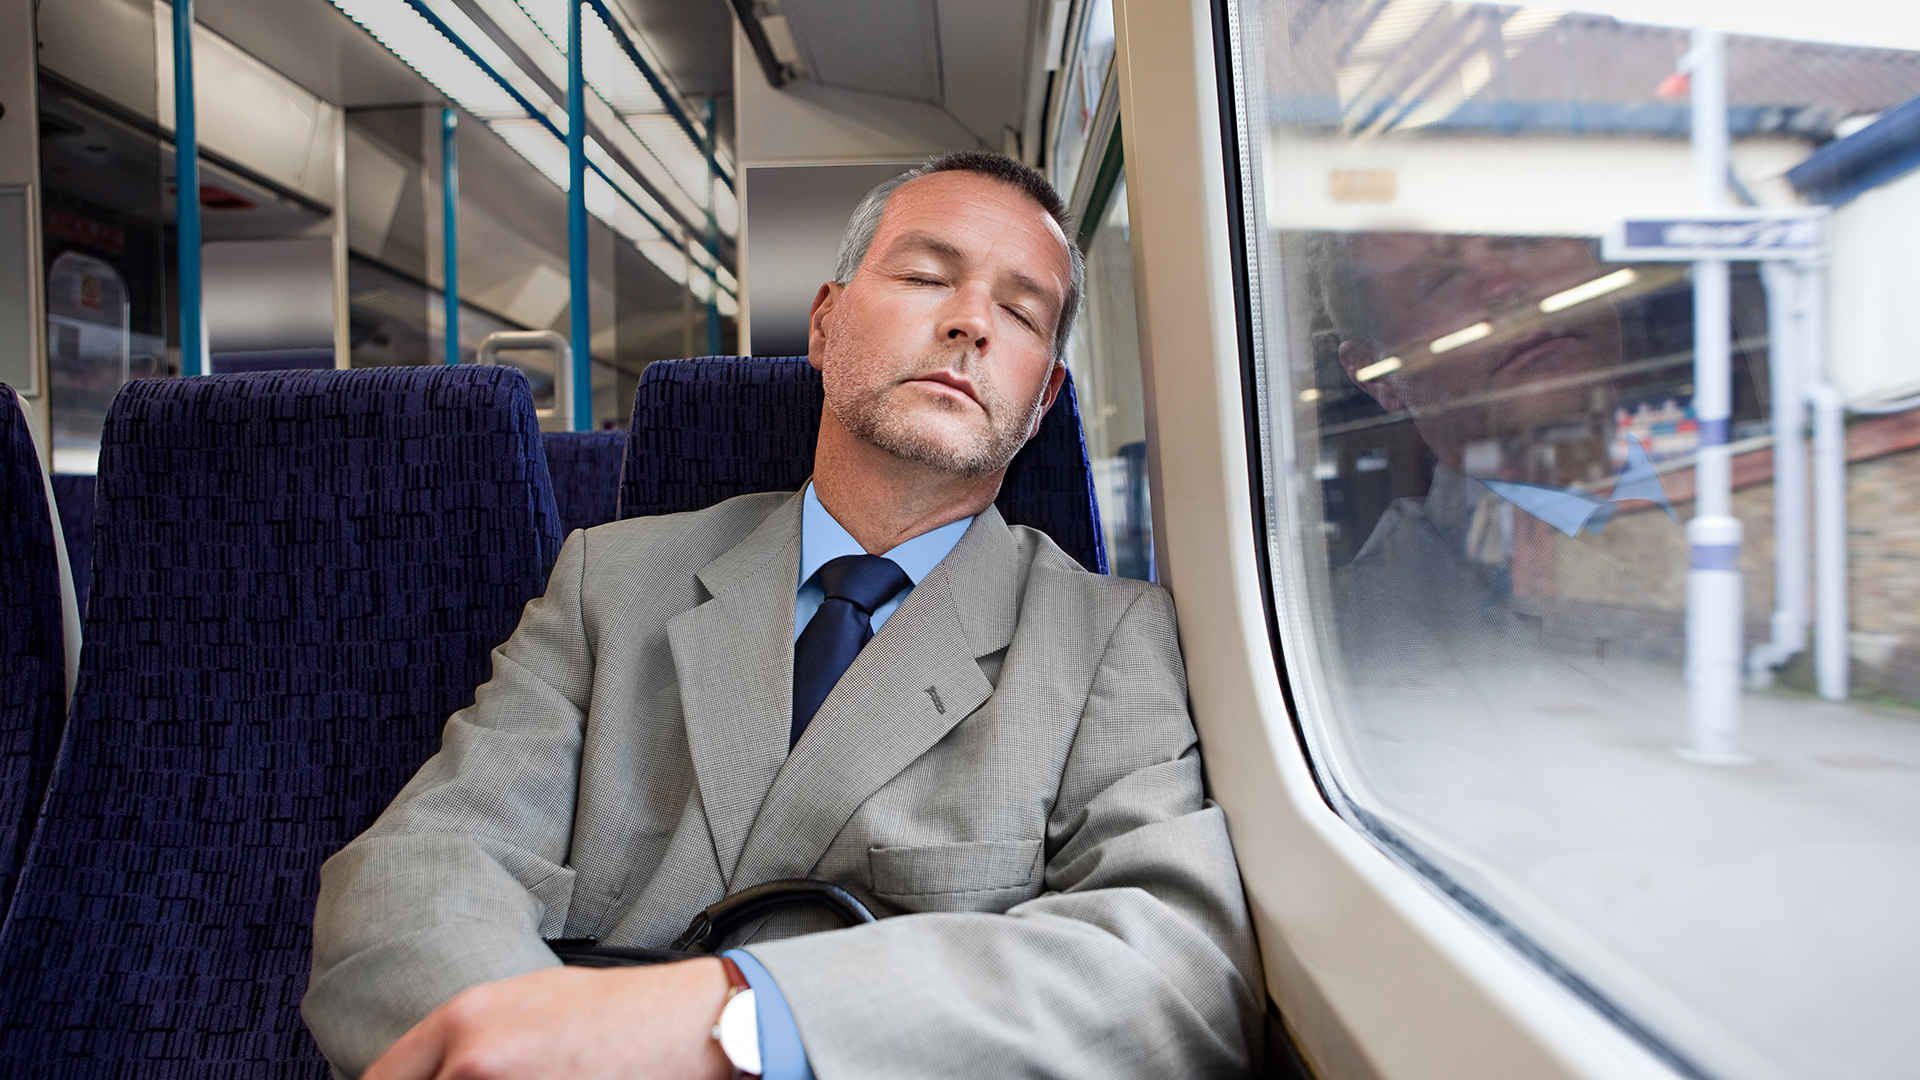 Mann im Anzug sitzend im Zug und am schlafen